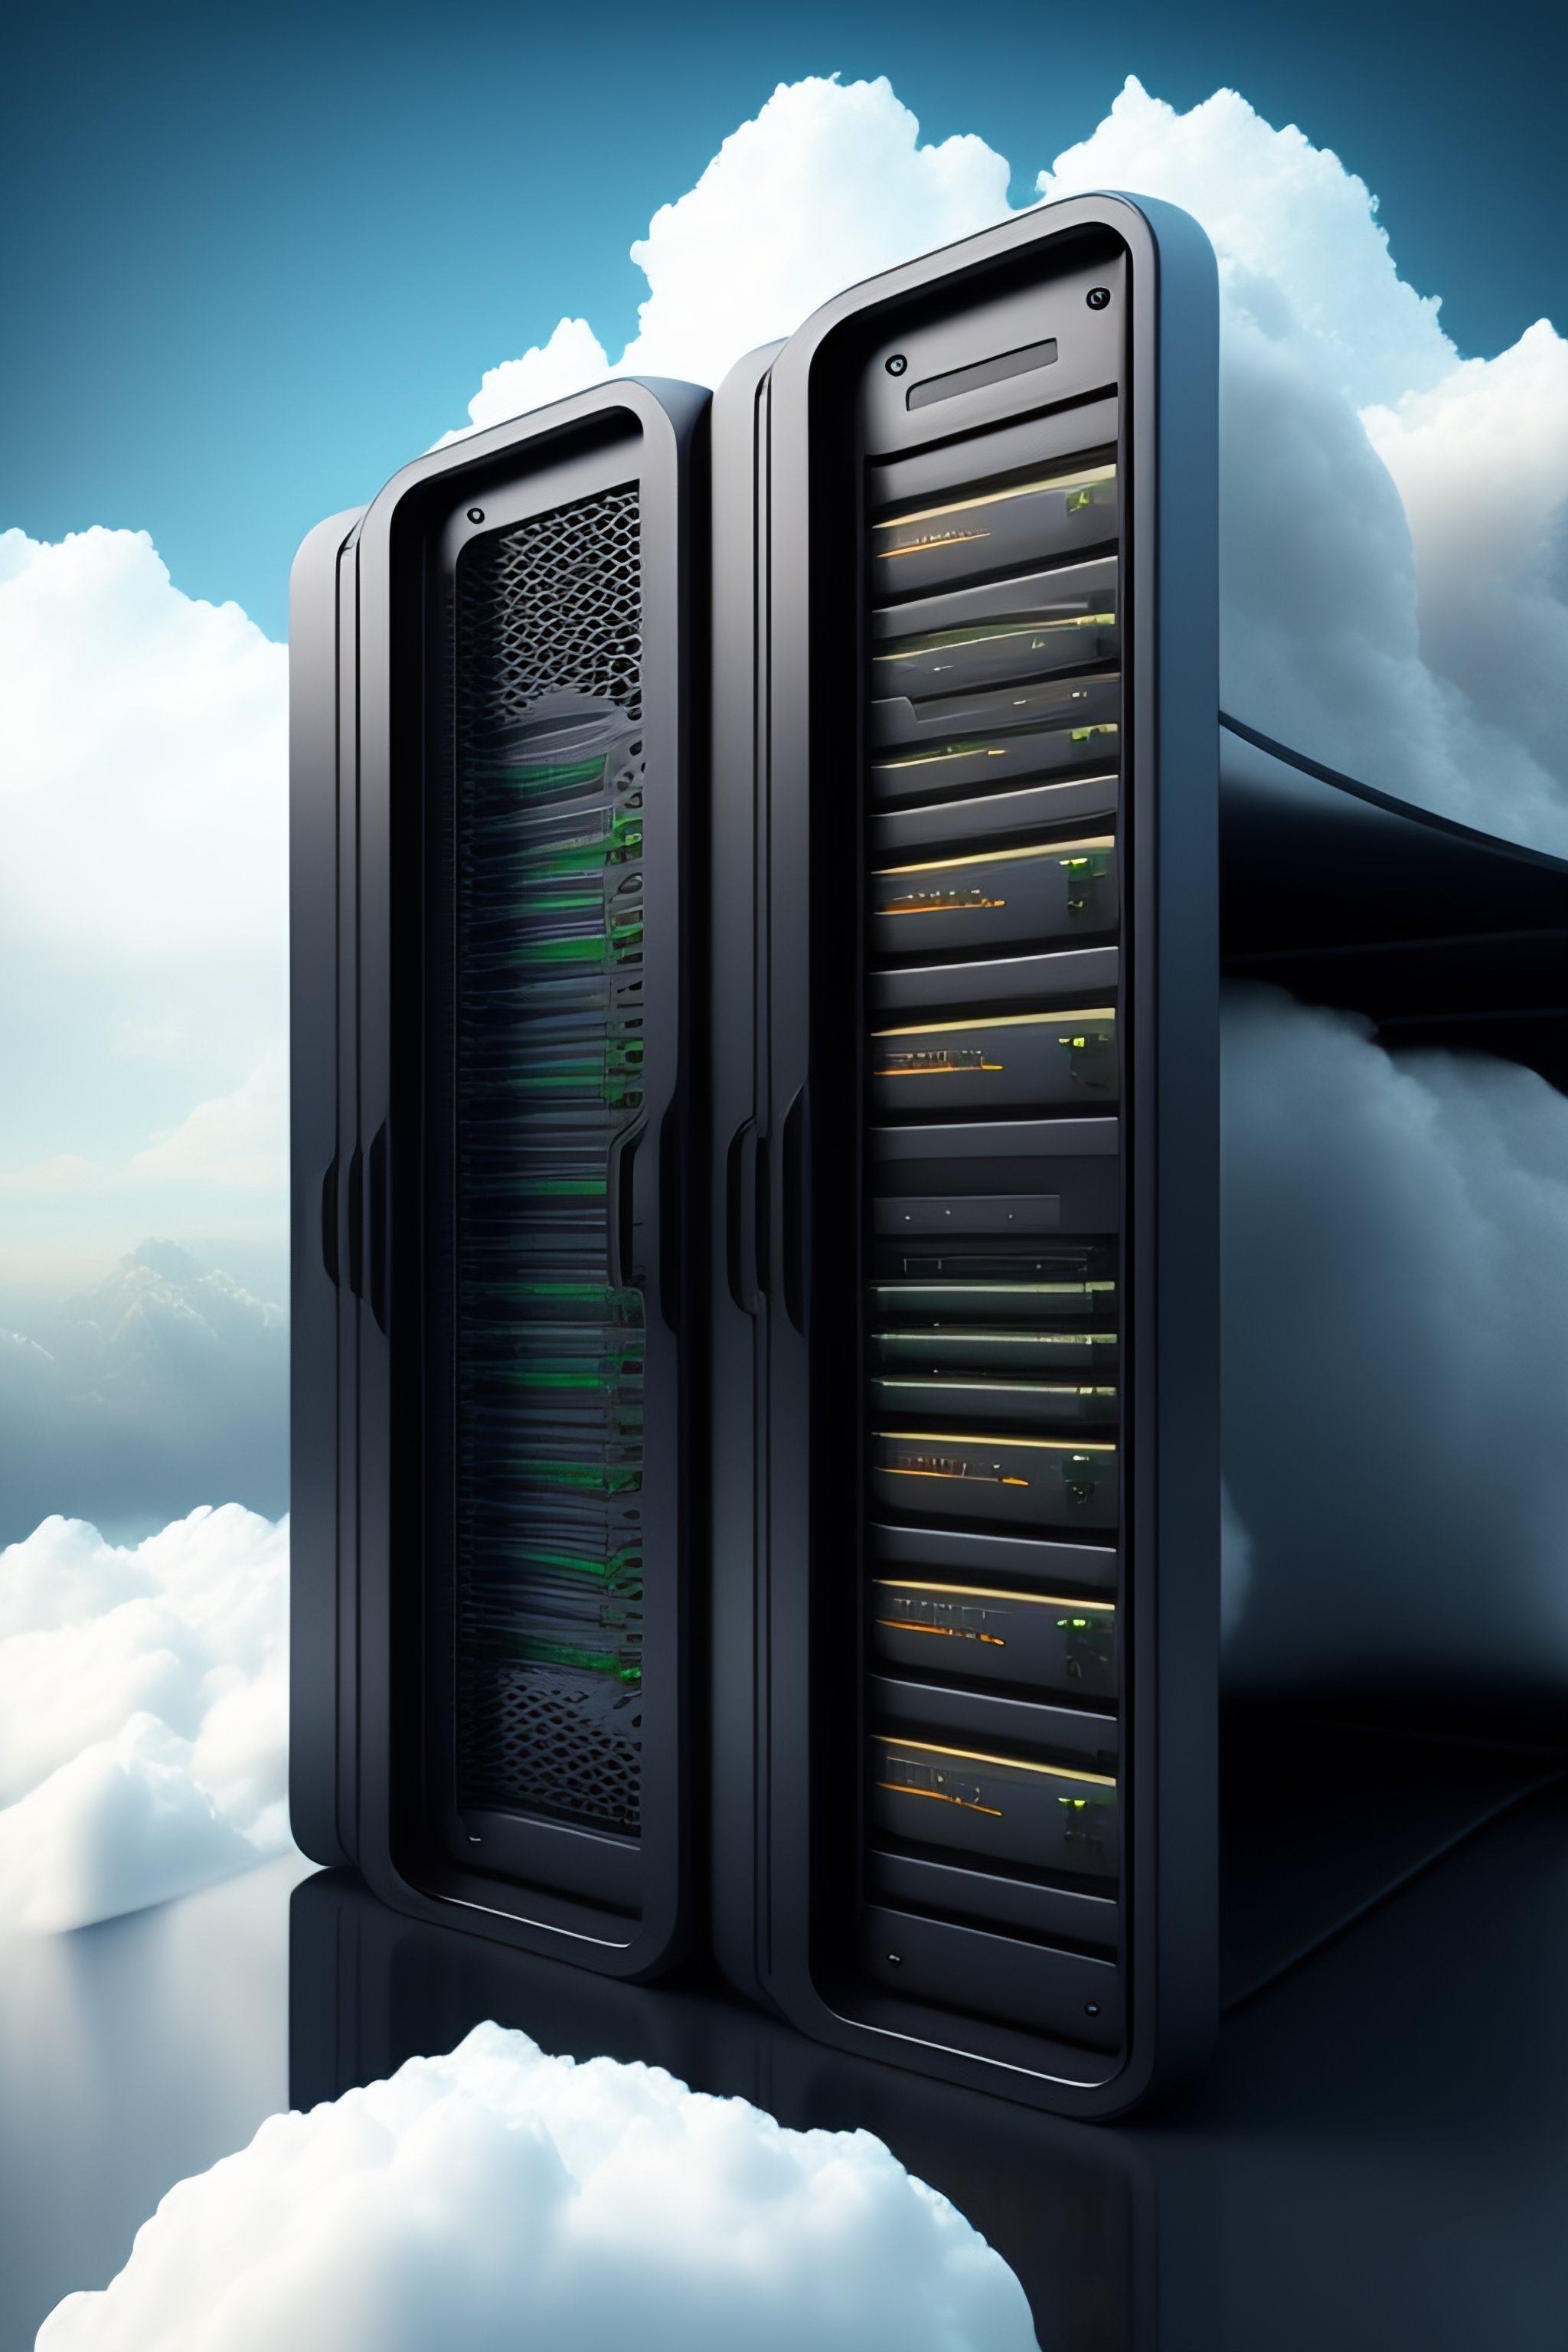 cloud storage services